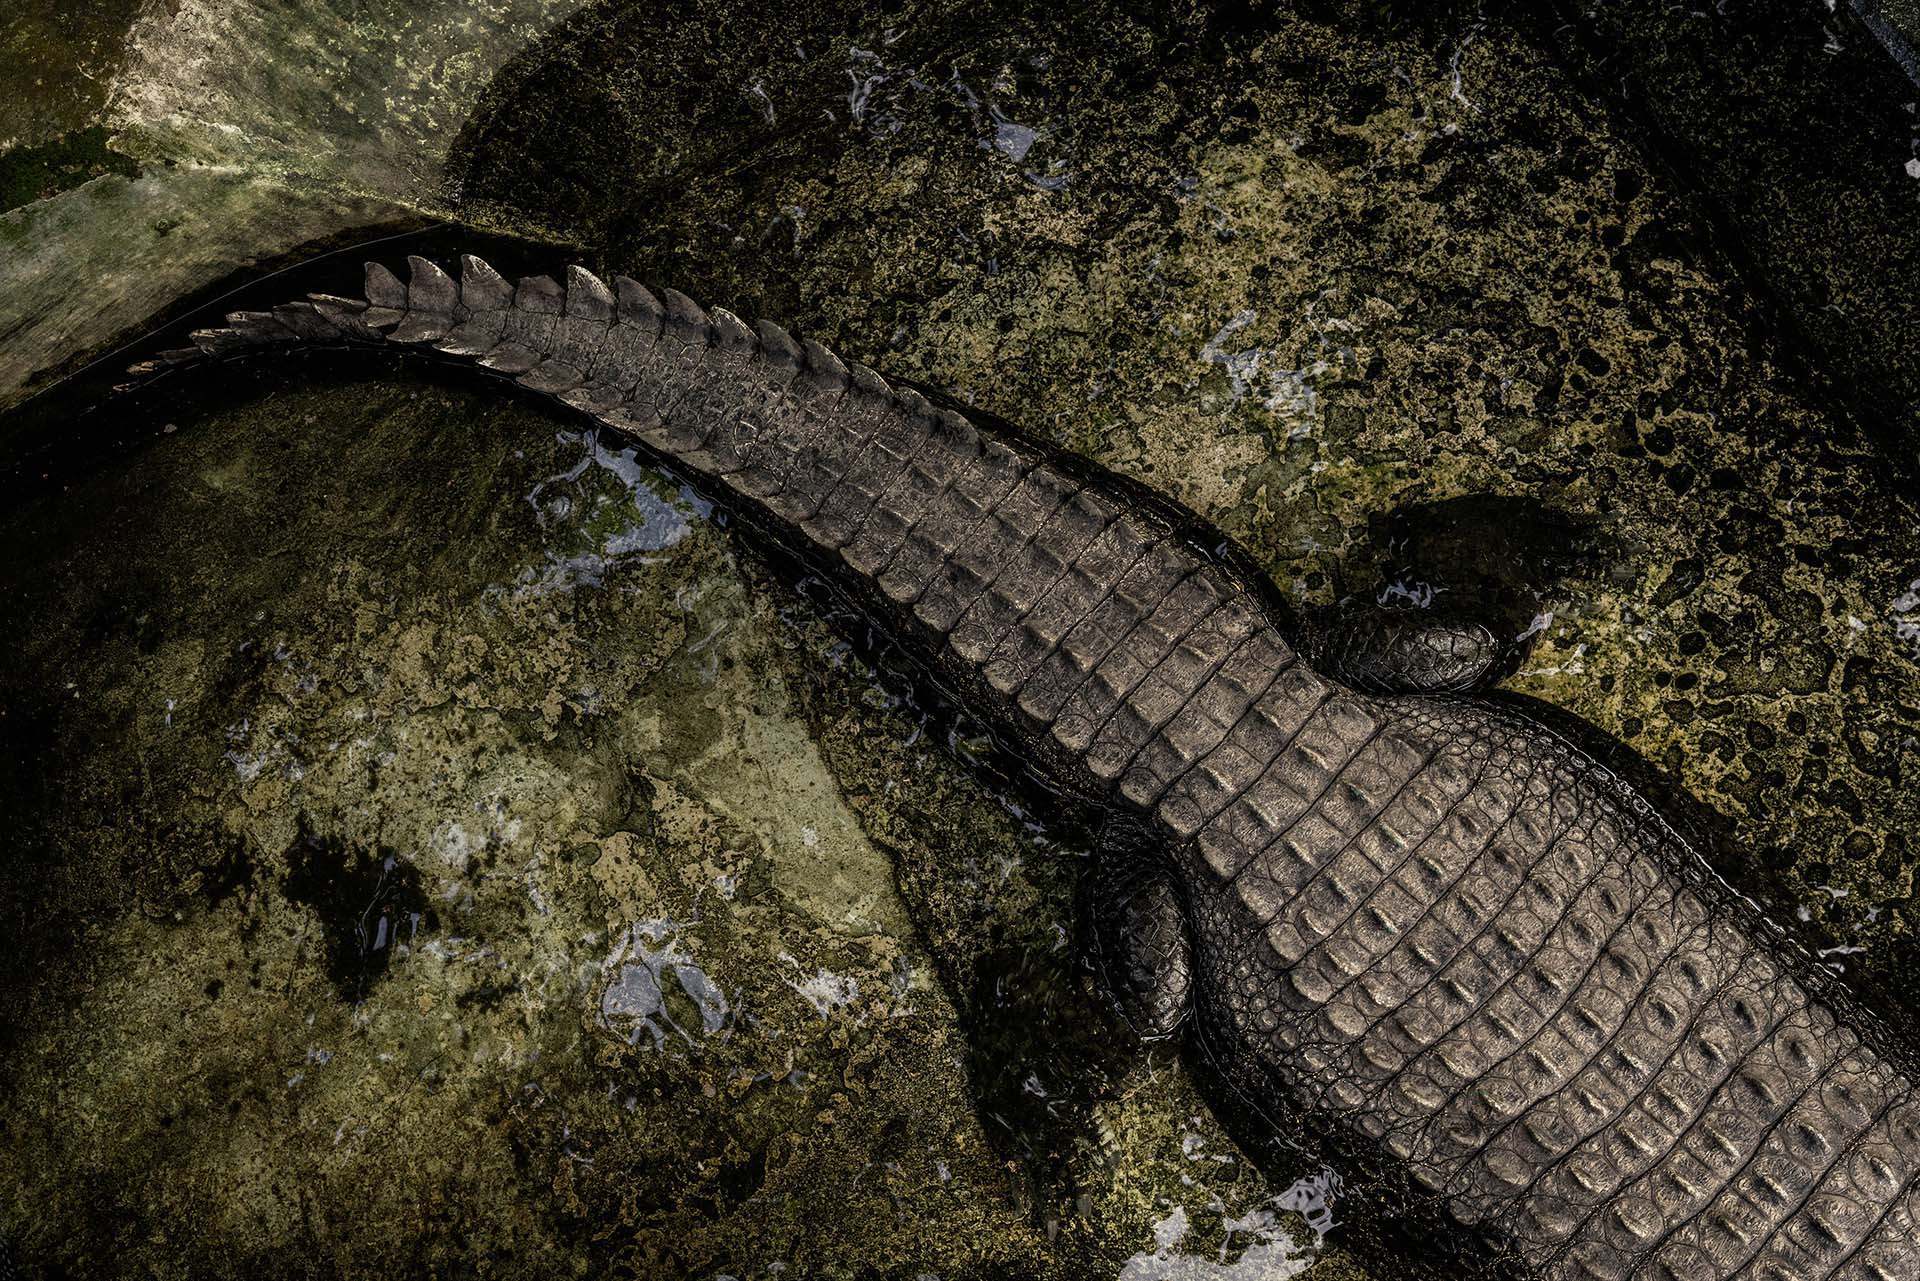 Investigadores dirigidos por la Universidad de Iowa descubrieron dos nuevas especies de cocodrilos que vagaban por partes de África hace entre 18 y 15 millones de años y se alimentaban de antepasados humanos (The New York Times)